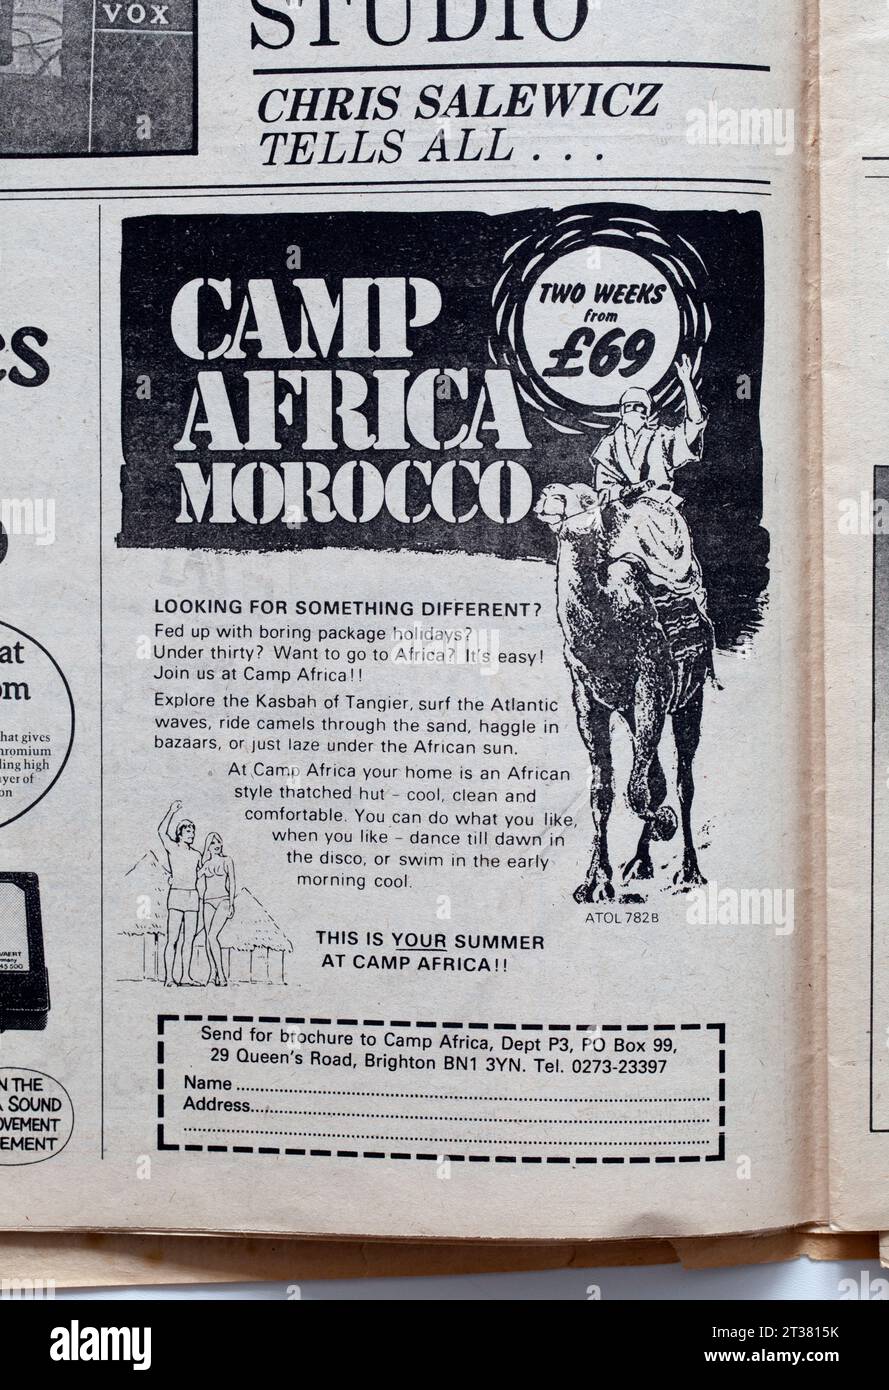 Werbung für Camp Africa Marokko in NME Music Paper der 1970er Jahre Stockfoto